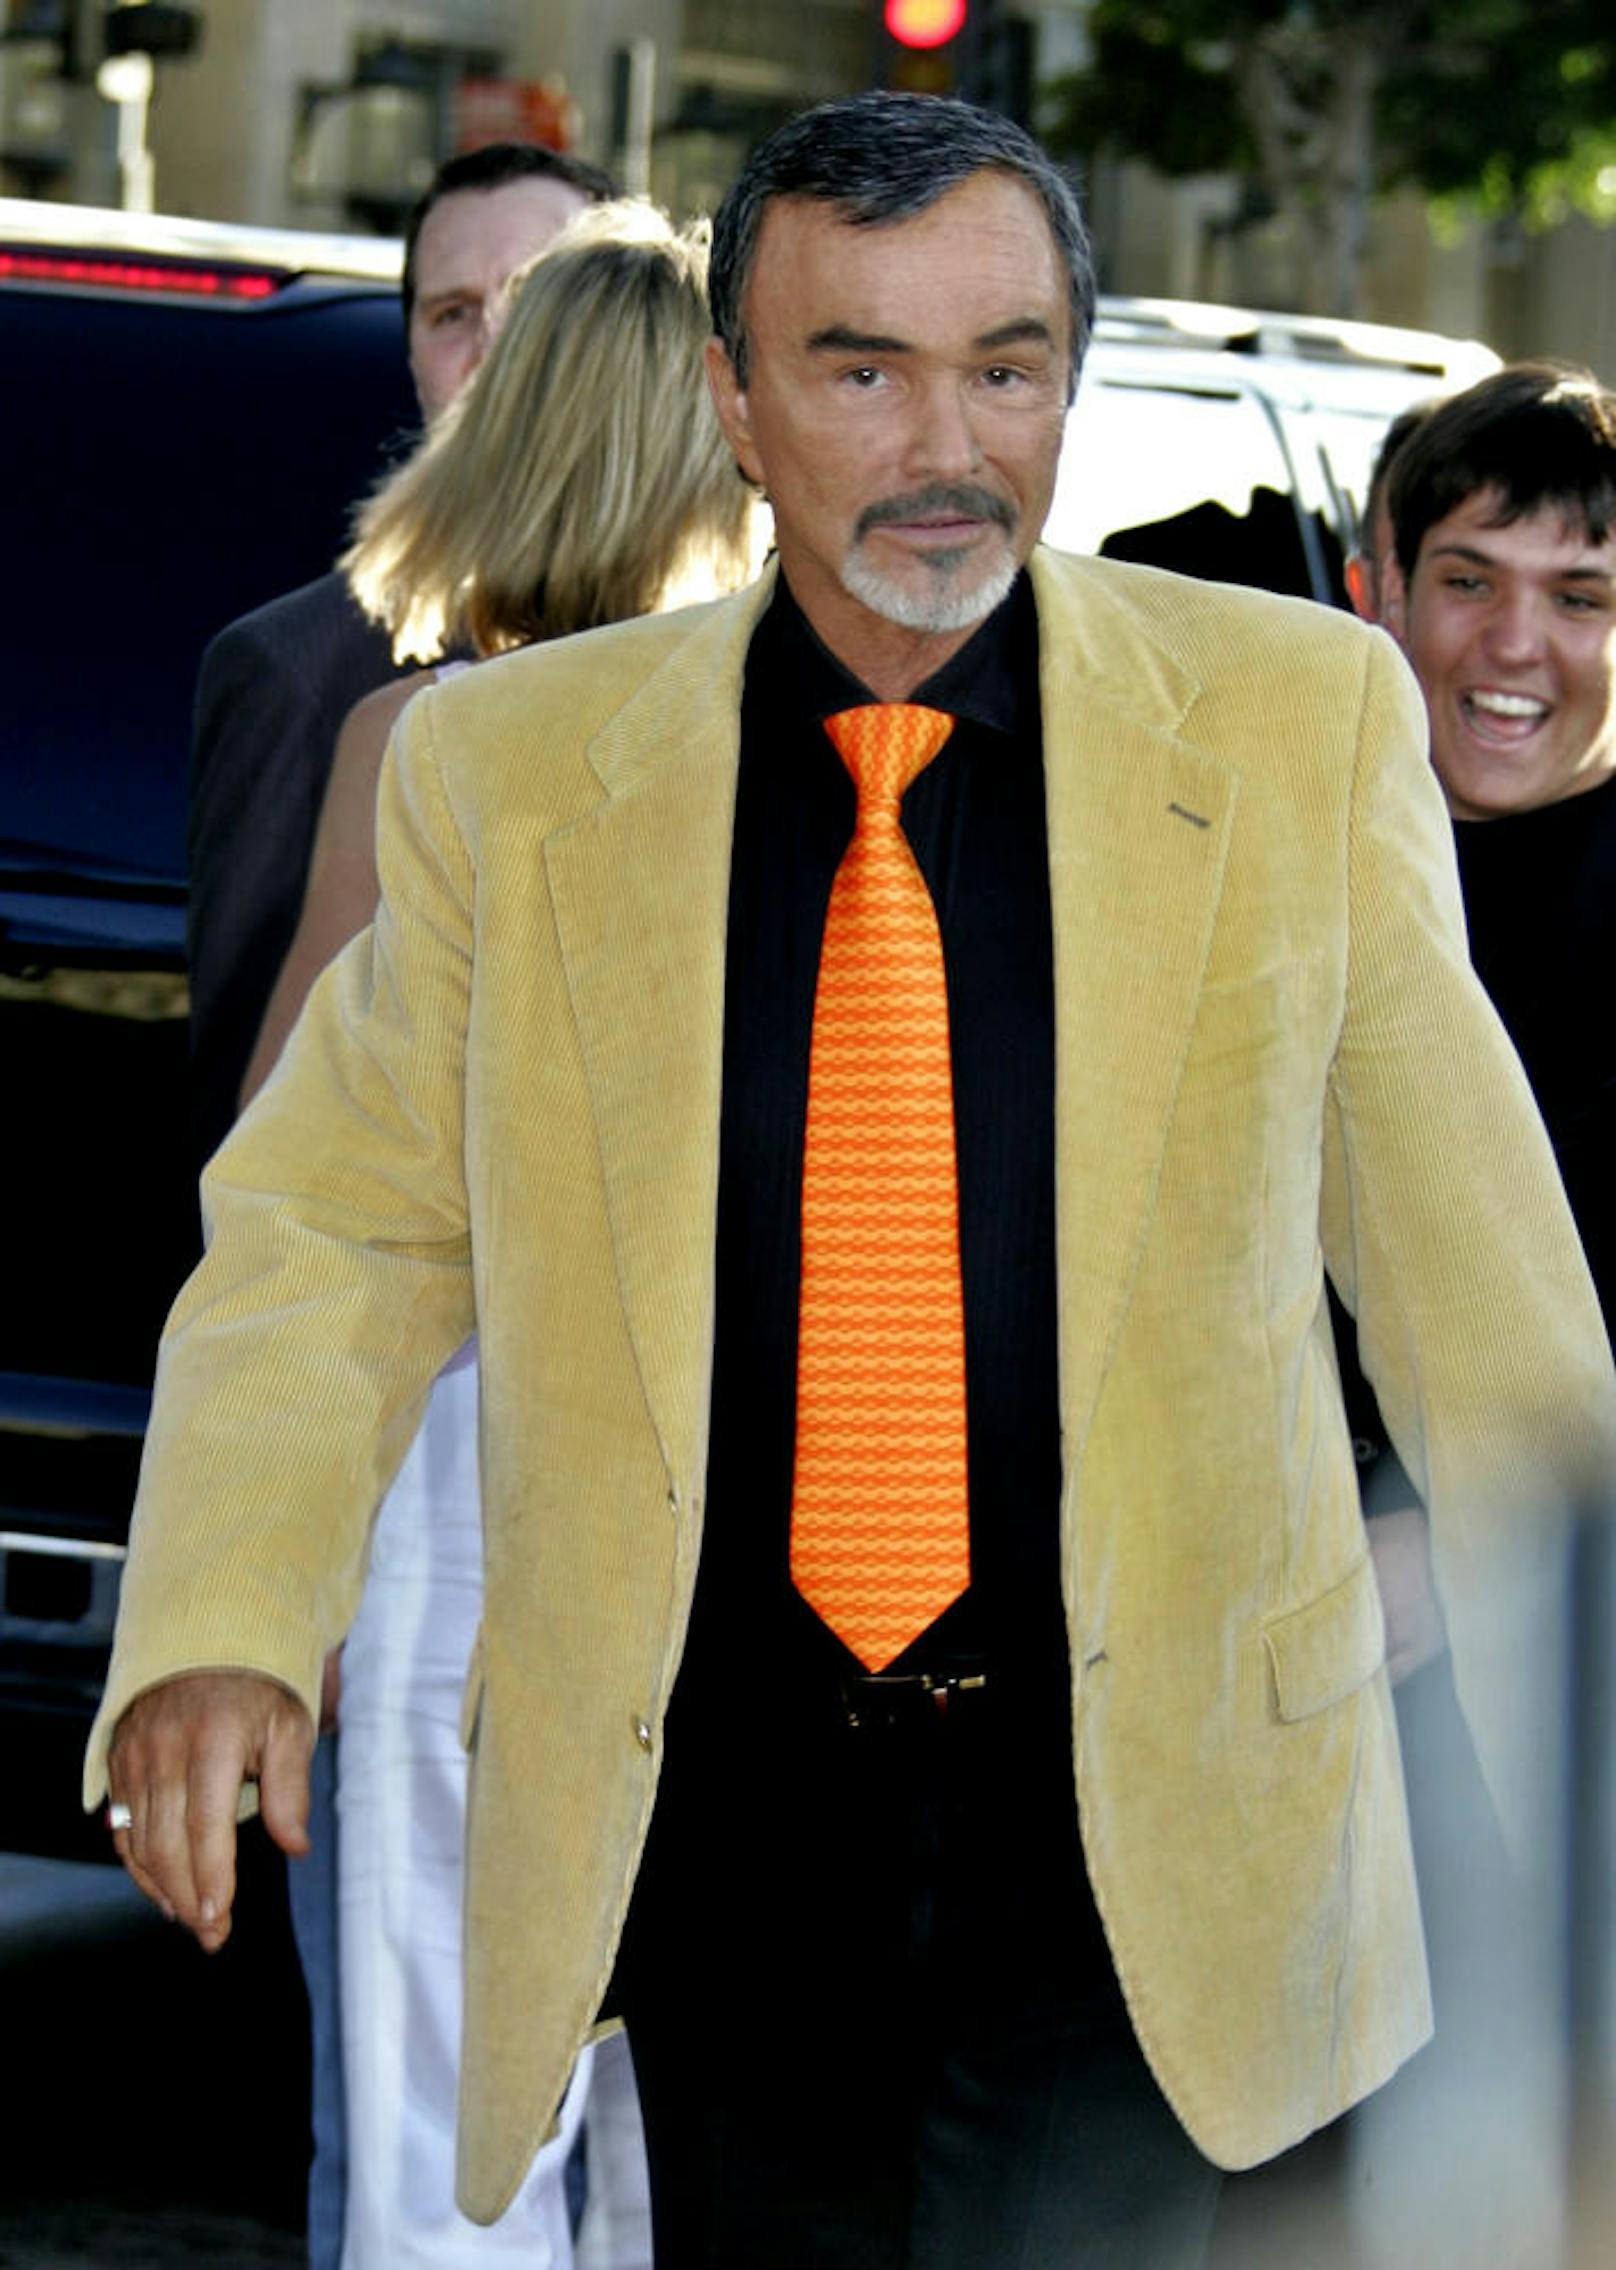 Burt Reynolds bei der Premiere von "The Dukes of Hazzard" in Hollywood, 2005.